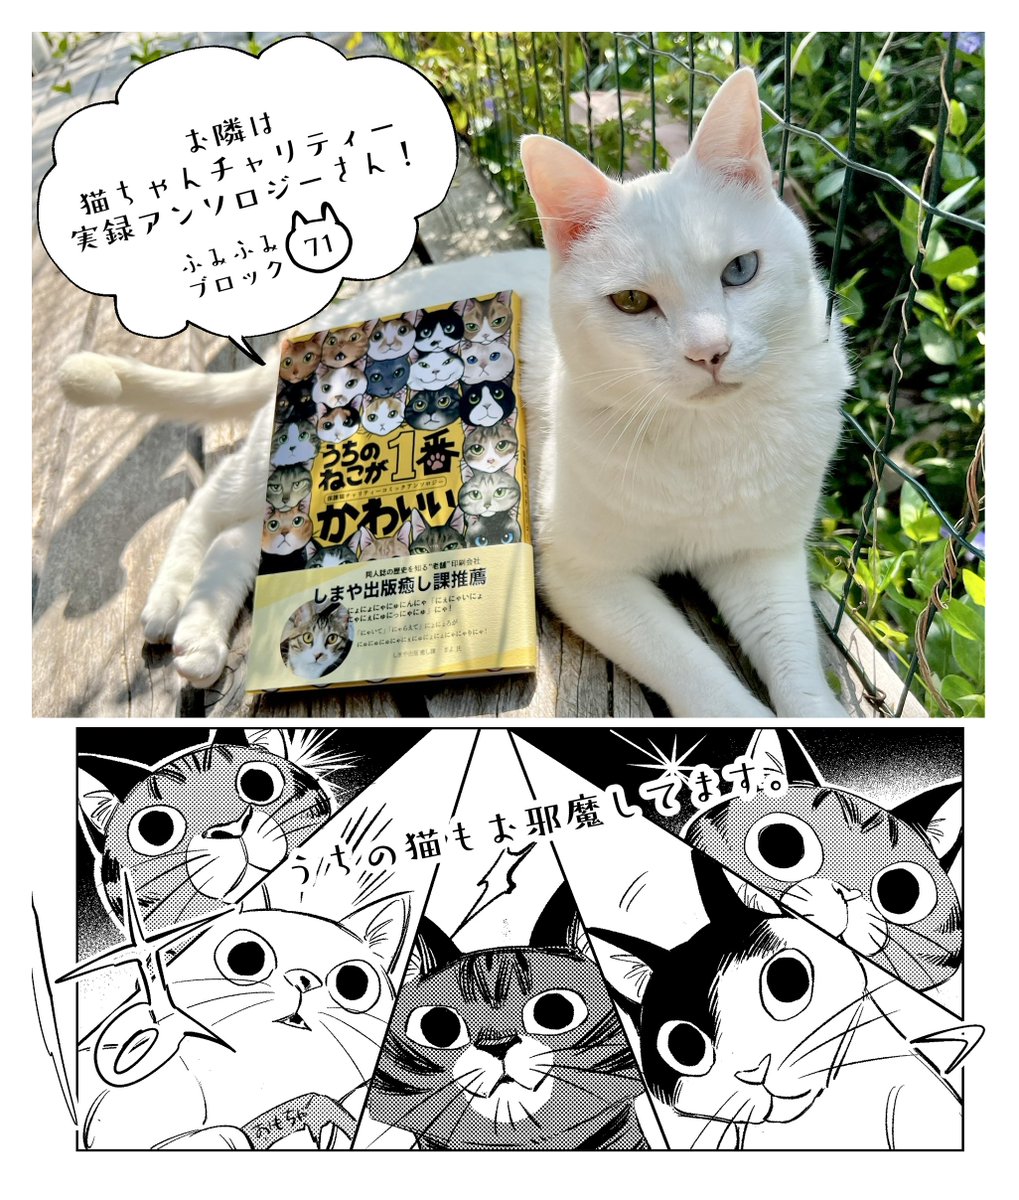 直近ですみません!
7月17日京セラドーム大阪にて開催されるにゃんともニャンズマーケット8に参加いたします。
以前作ったこの子たちを連れて行きます～!利益は全て保護猫団体様に寄付いたします。
どうぞよろしくお願いいたします💕😸
 #ニャンズマーケット  #チャリティ 